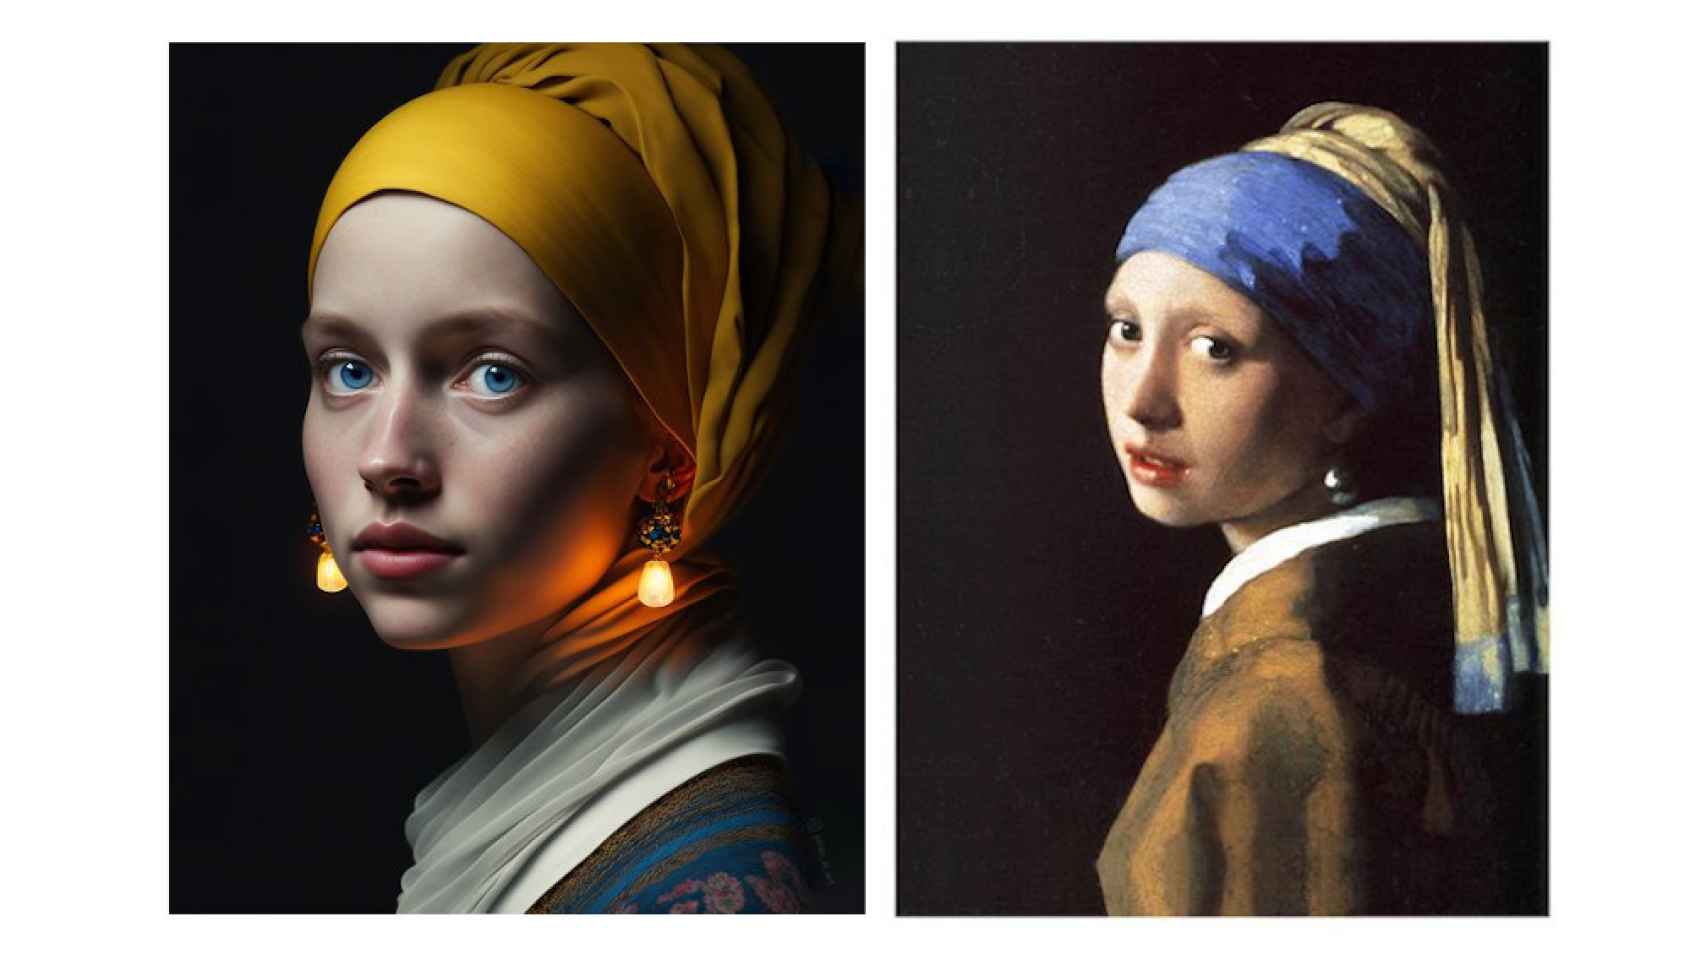 La joven de la perla de Vermeer a la la derecha de una reinterpretación hecha con IA